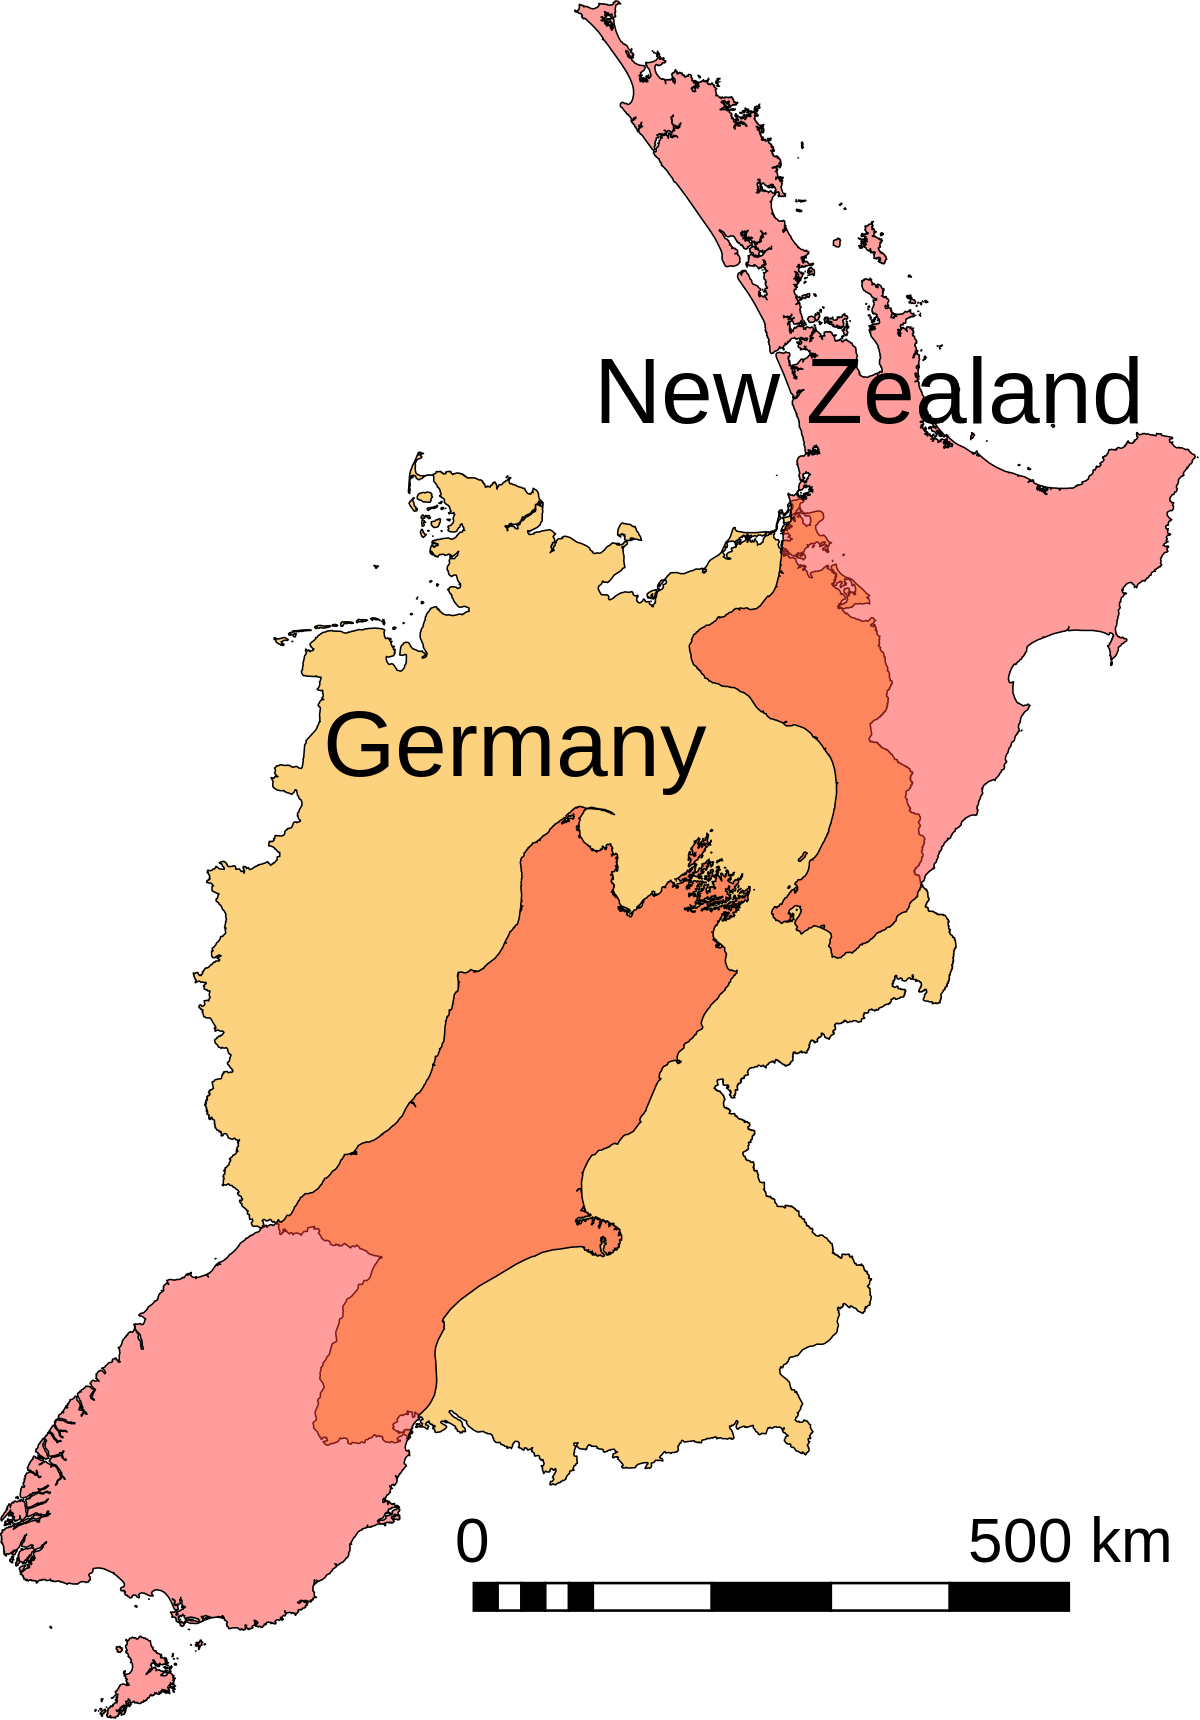 Germany Size